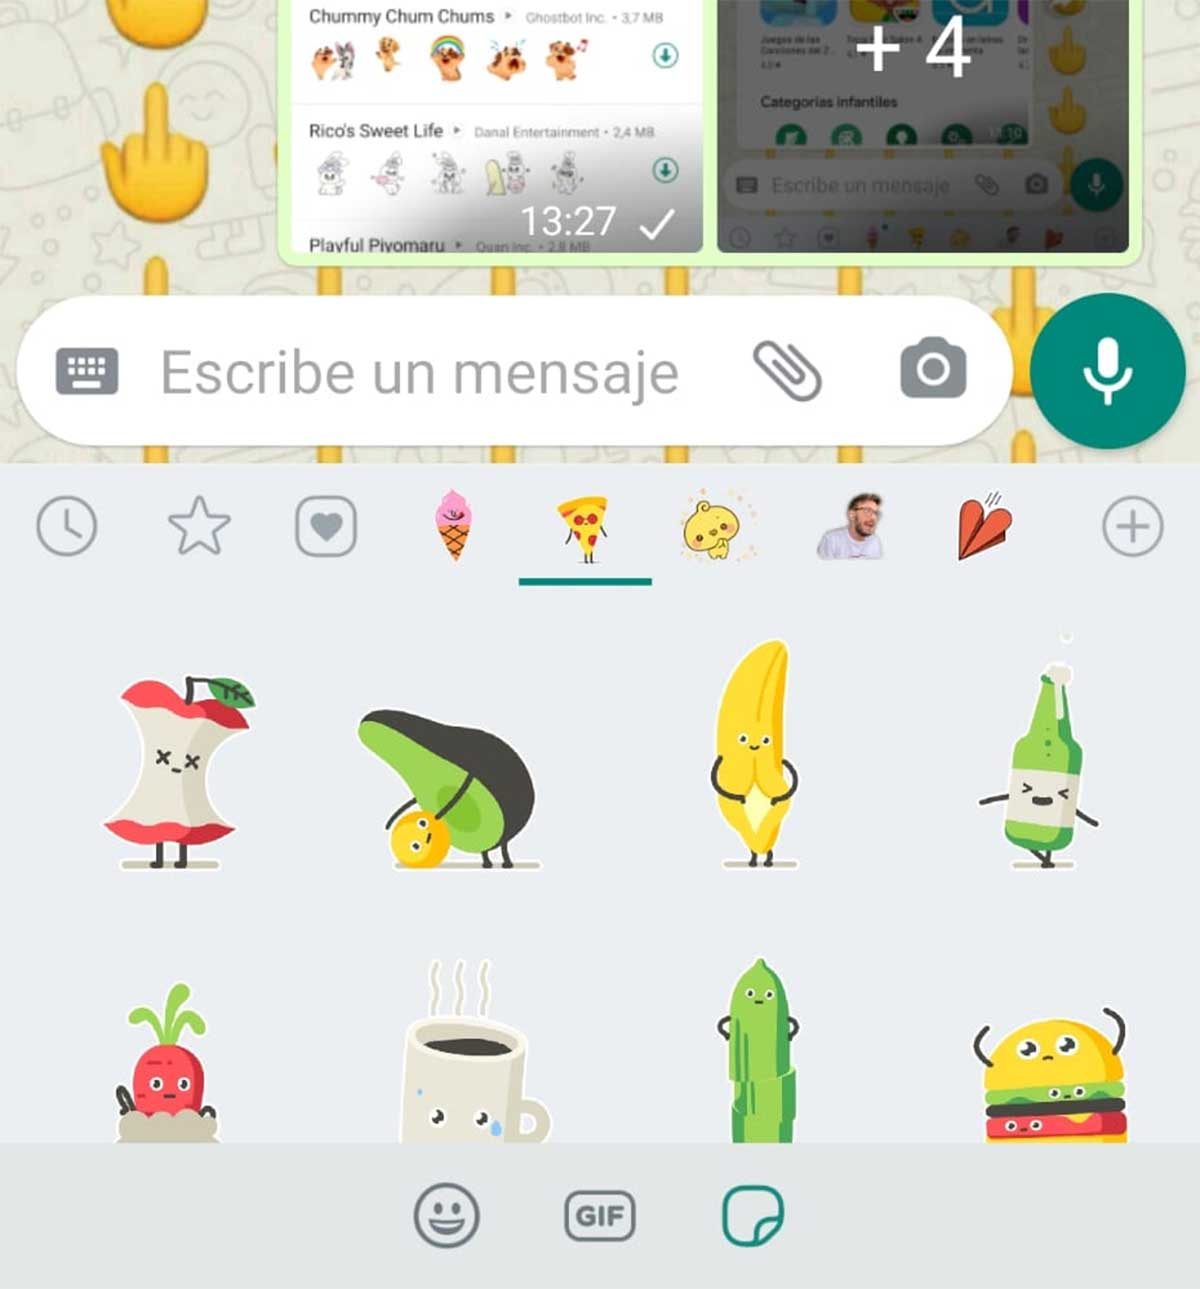 caricia Ambiguo amplificación Los mejores stickers animados para descargar gratis en WhatsApp